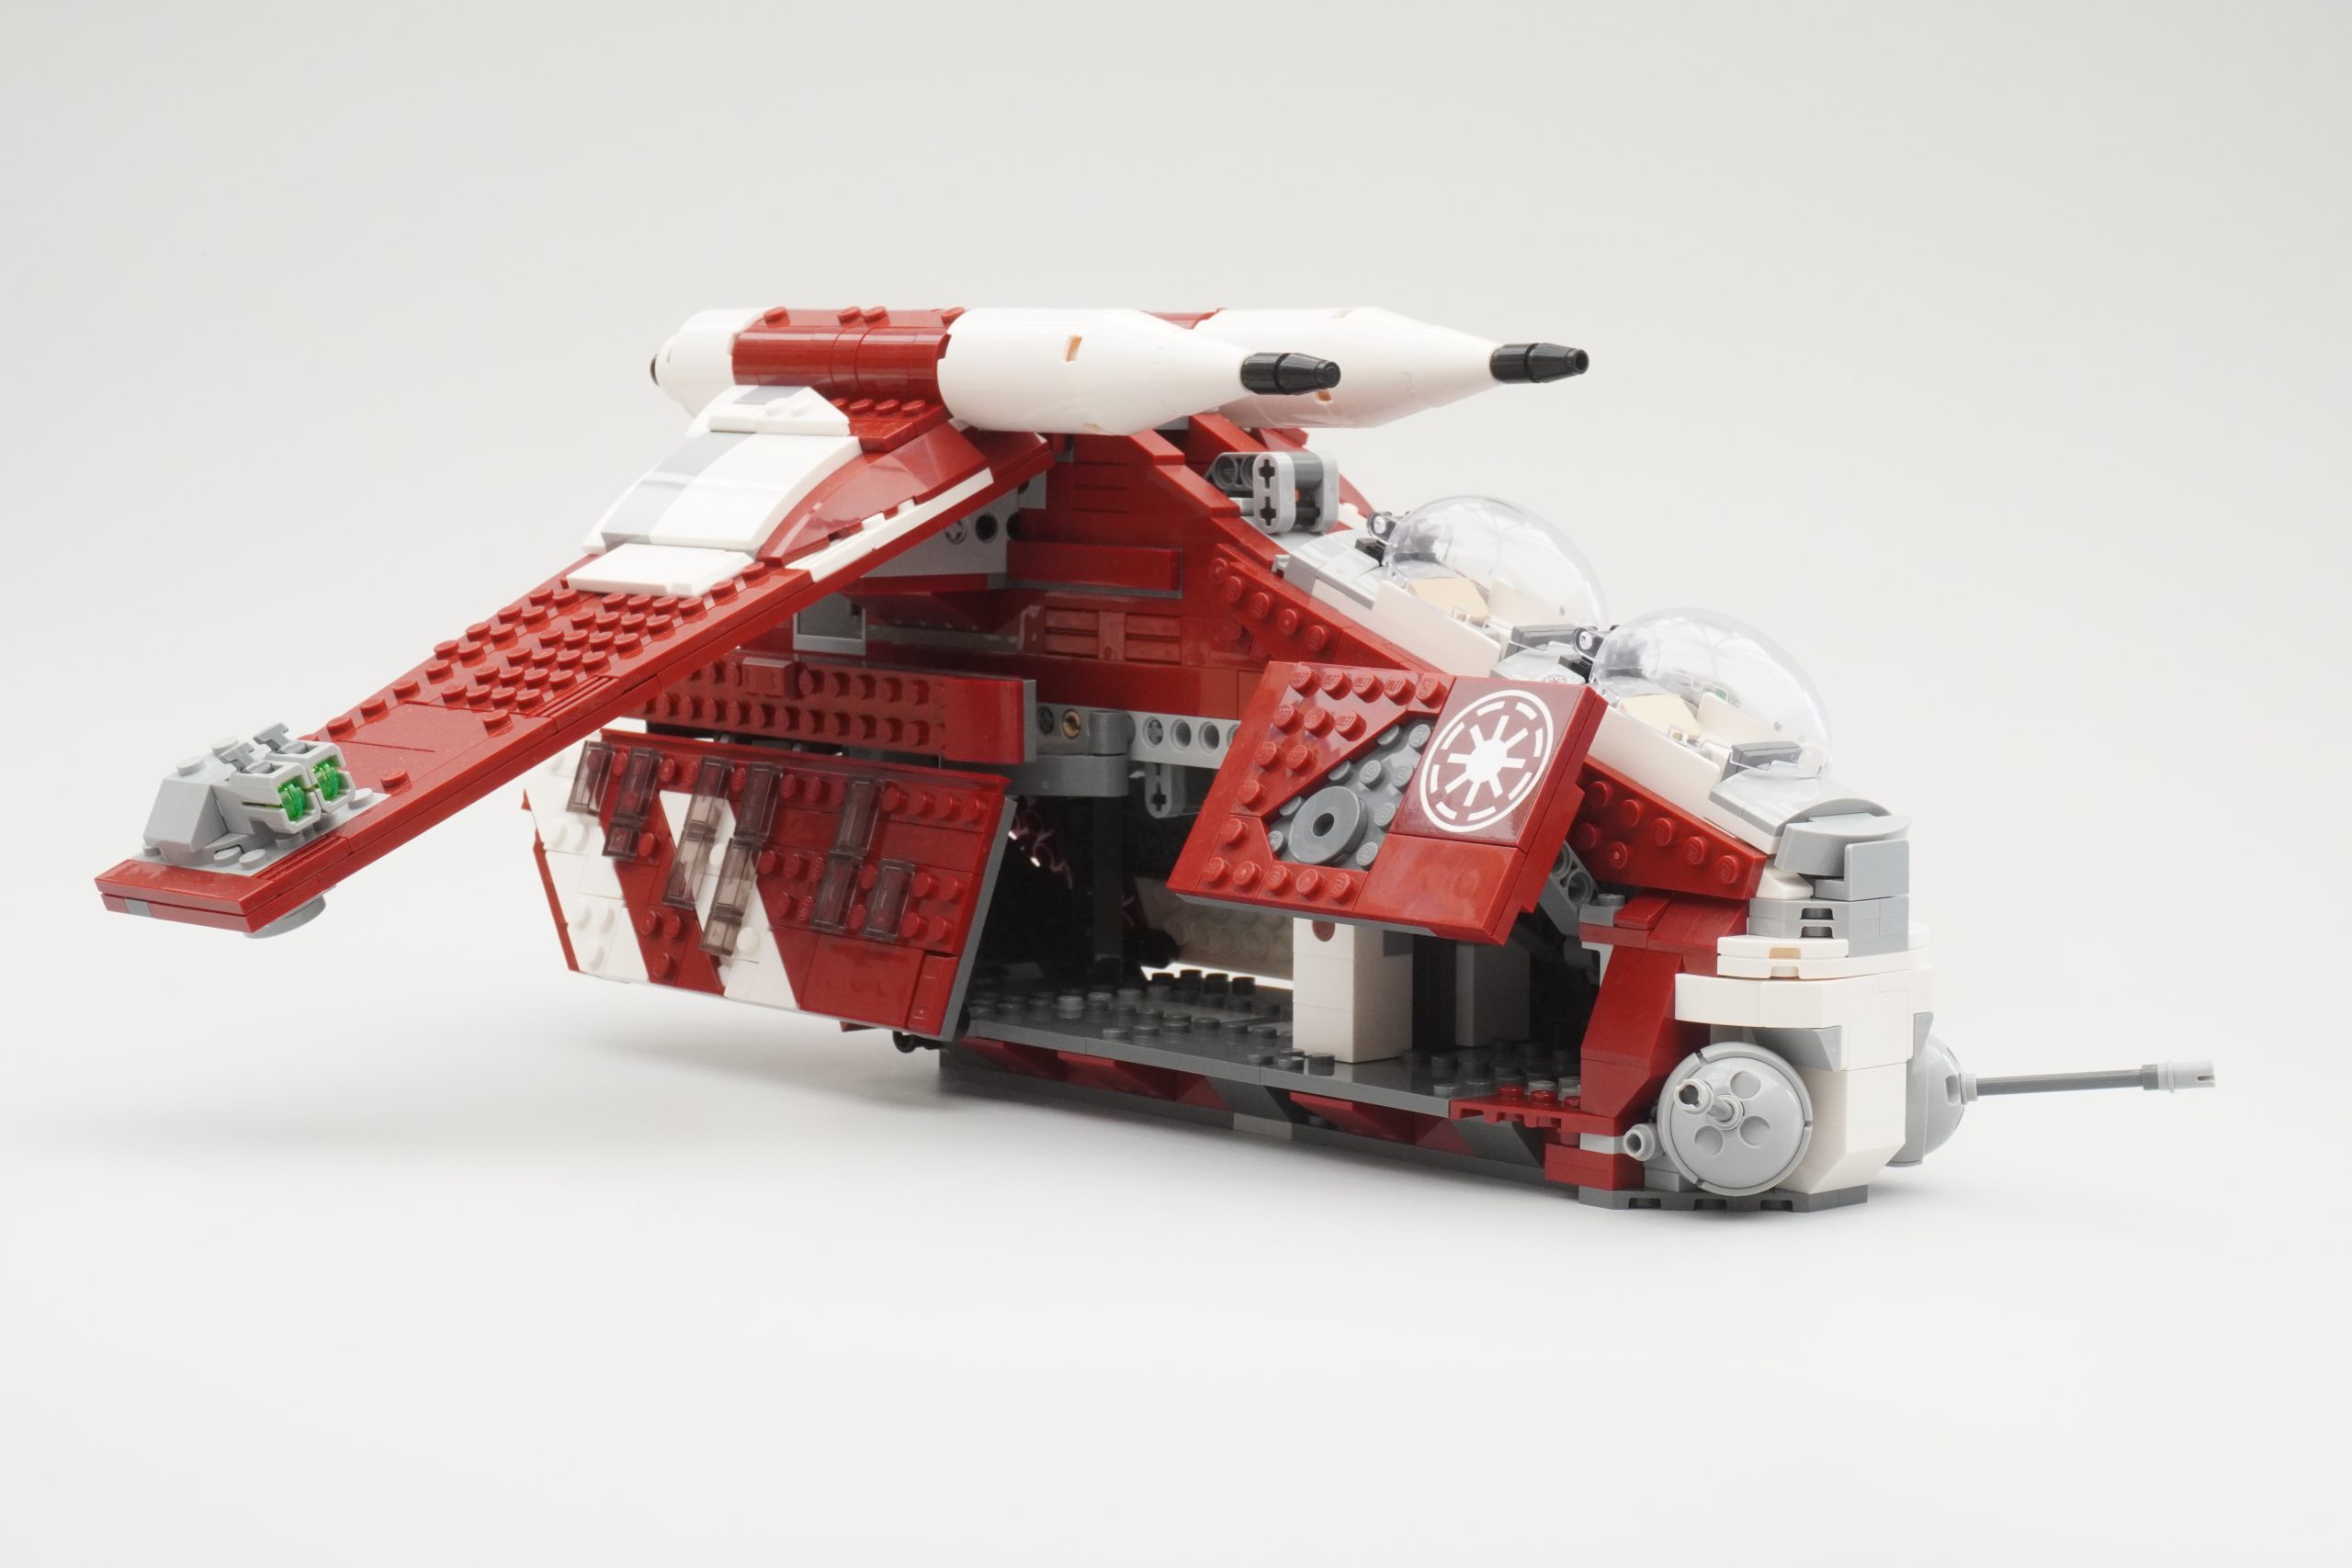 LEGO 75354 Coruscant Guard Gunship UK/EU prices confirmed